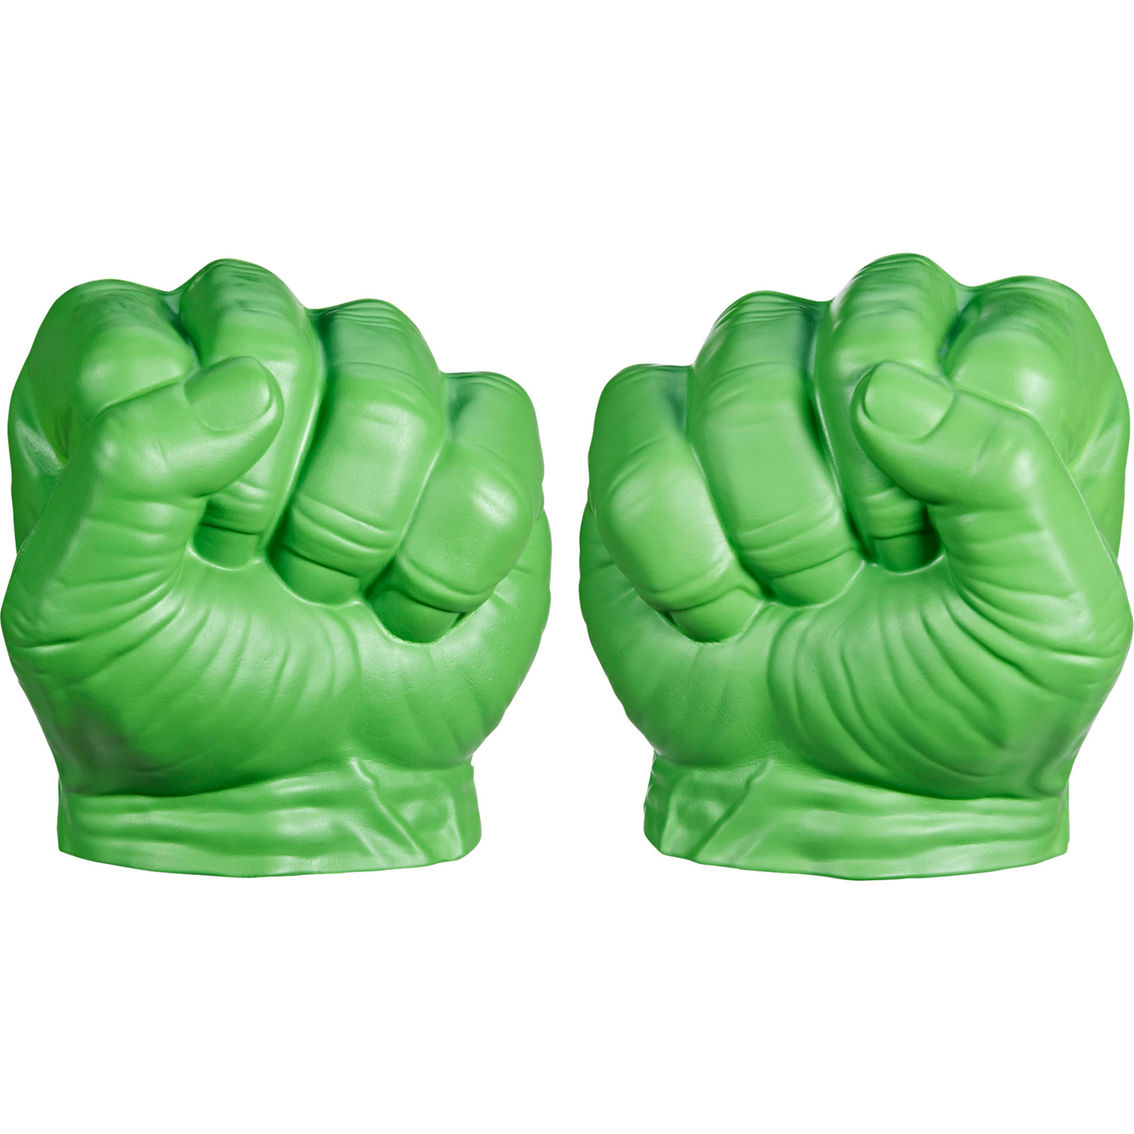 Marvel Avengers Hulk Gamma Smash Fists - Image 2 of 5